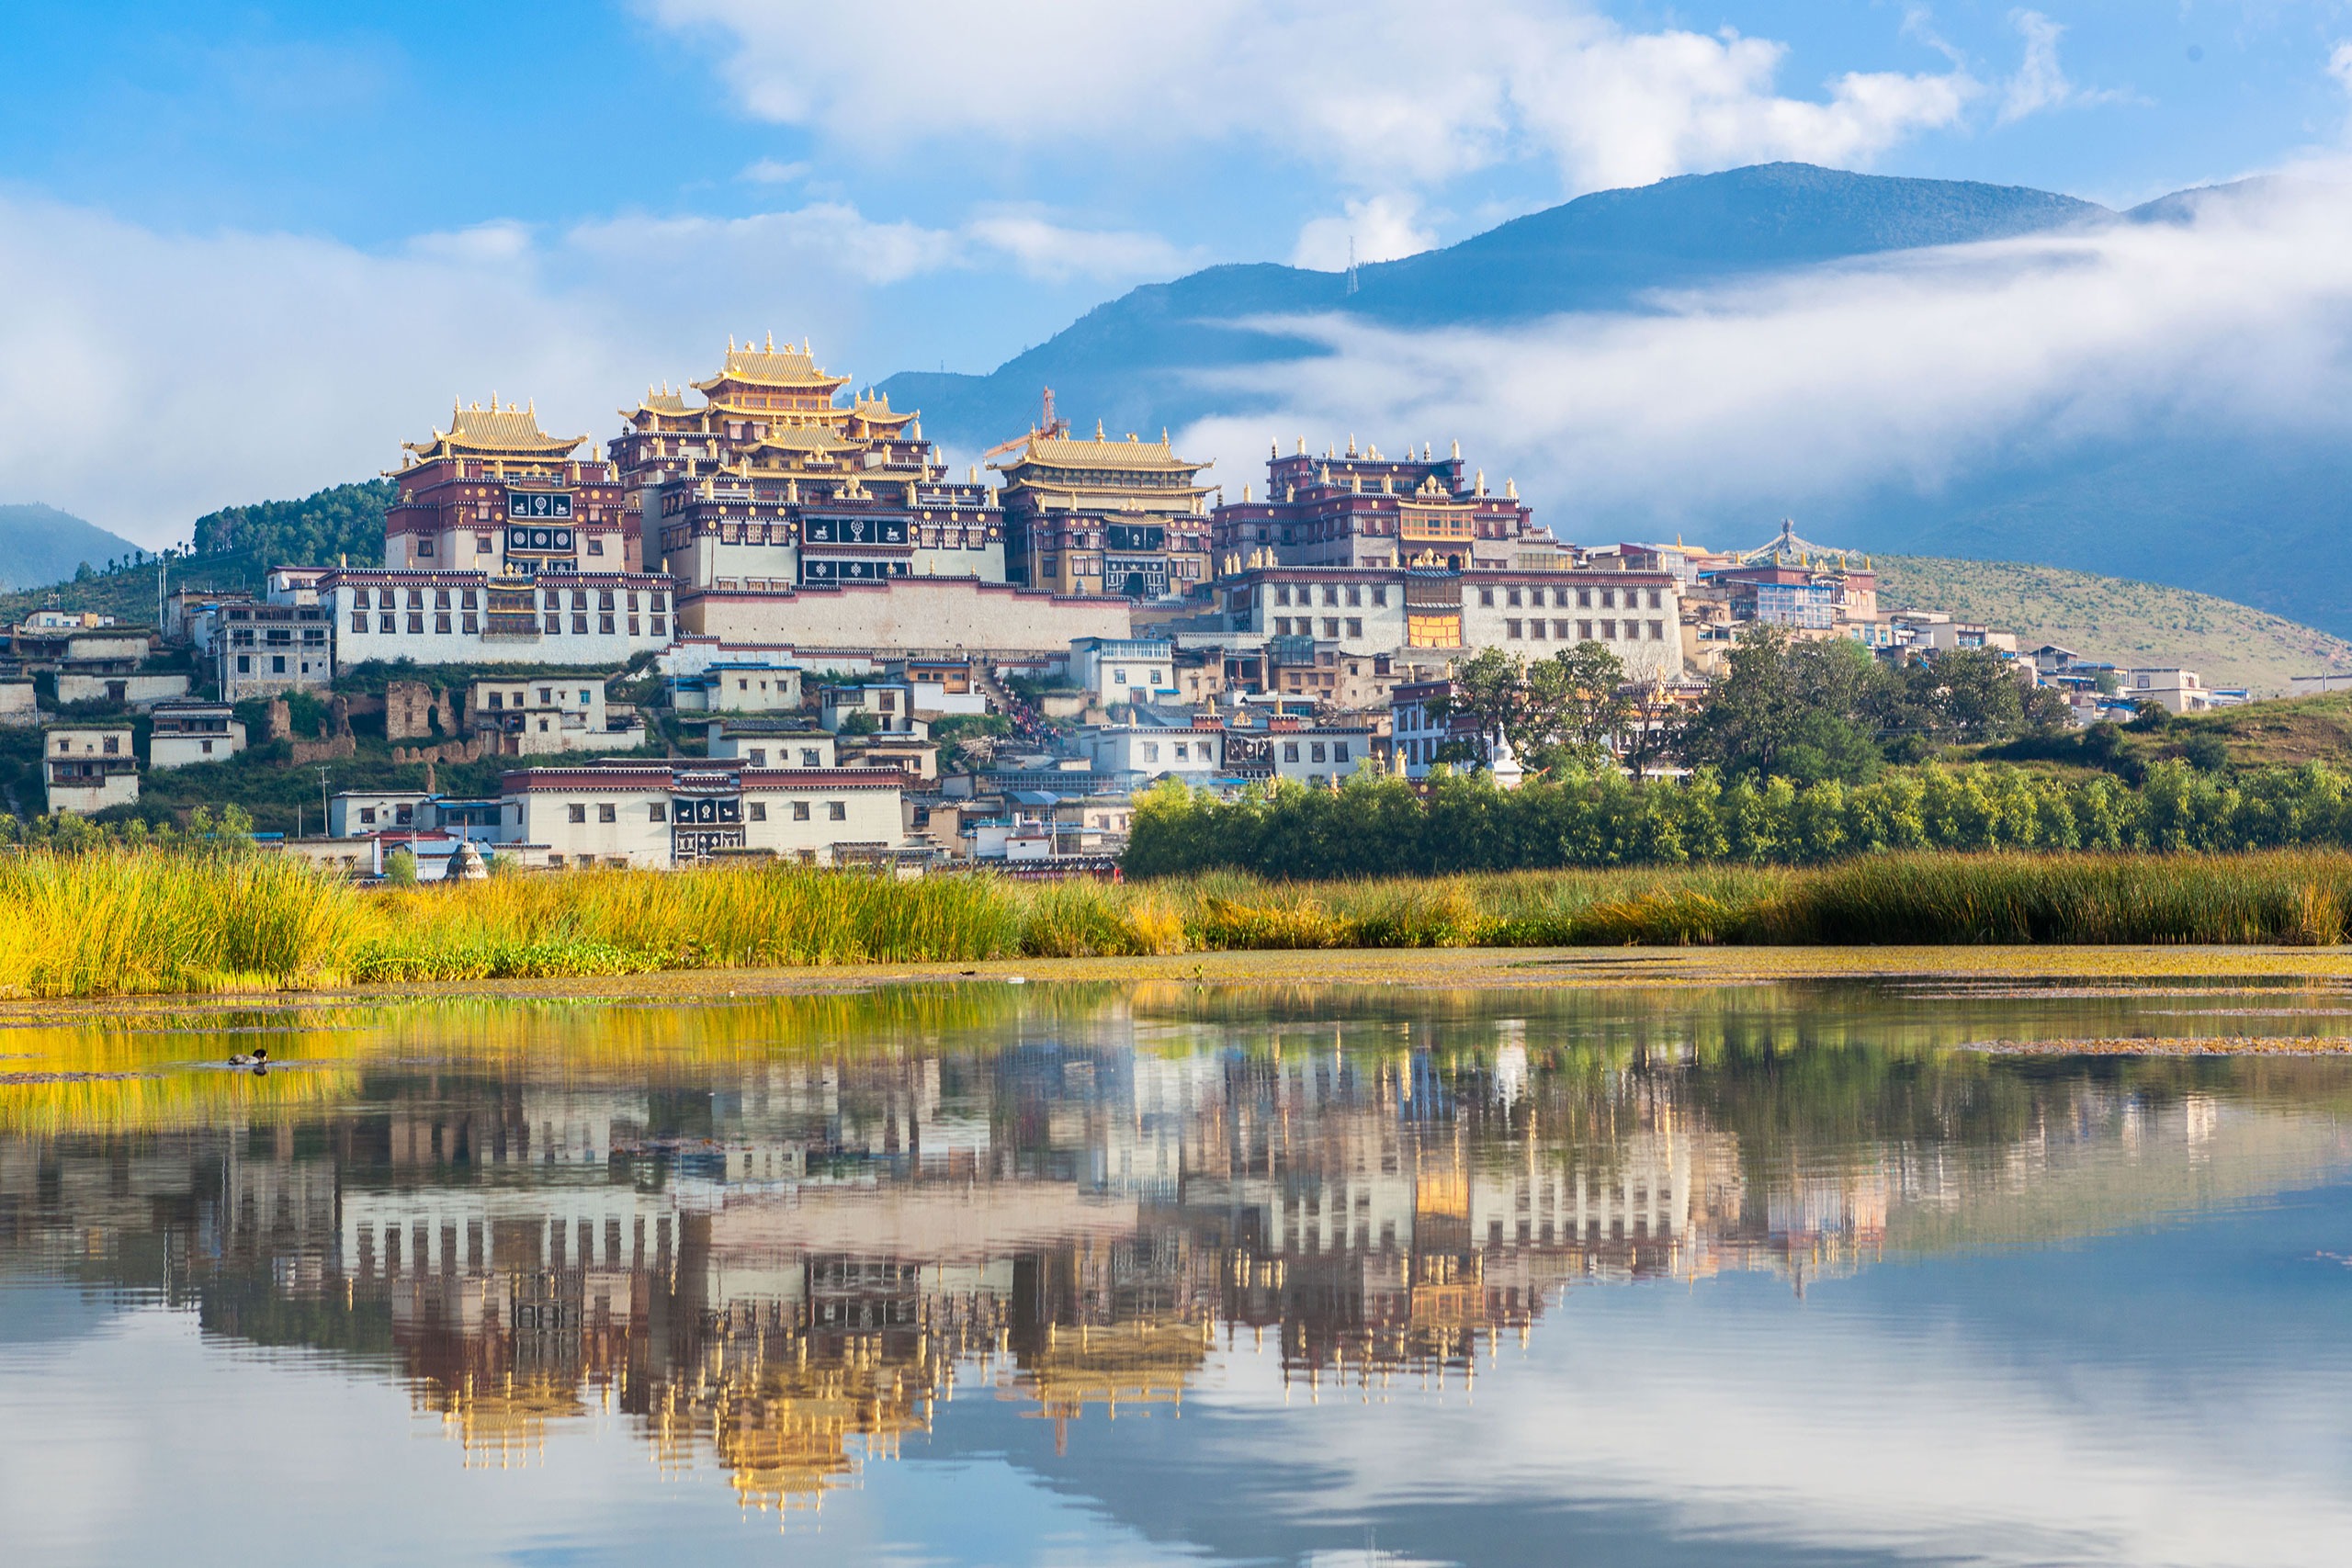 Tu viện Songzanlin - Tu viện Phật giáo Tây Tạng nổi tiếng ở Shangrila - iVIVU.com